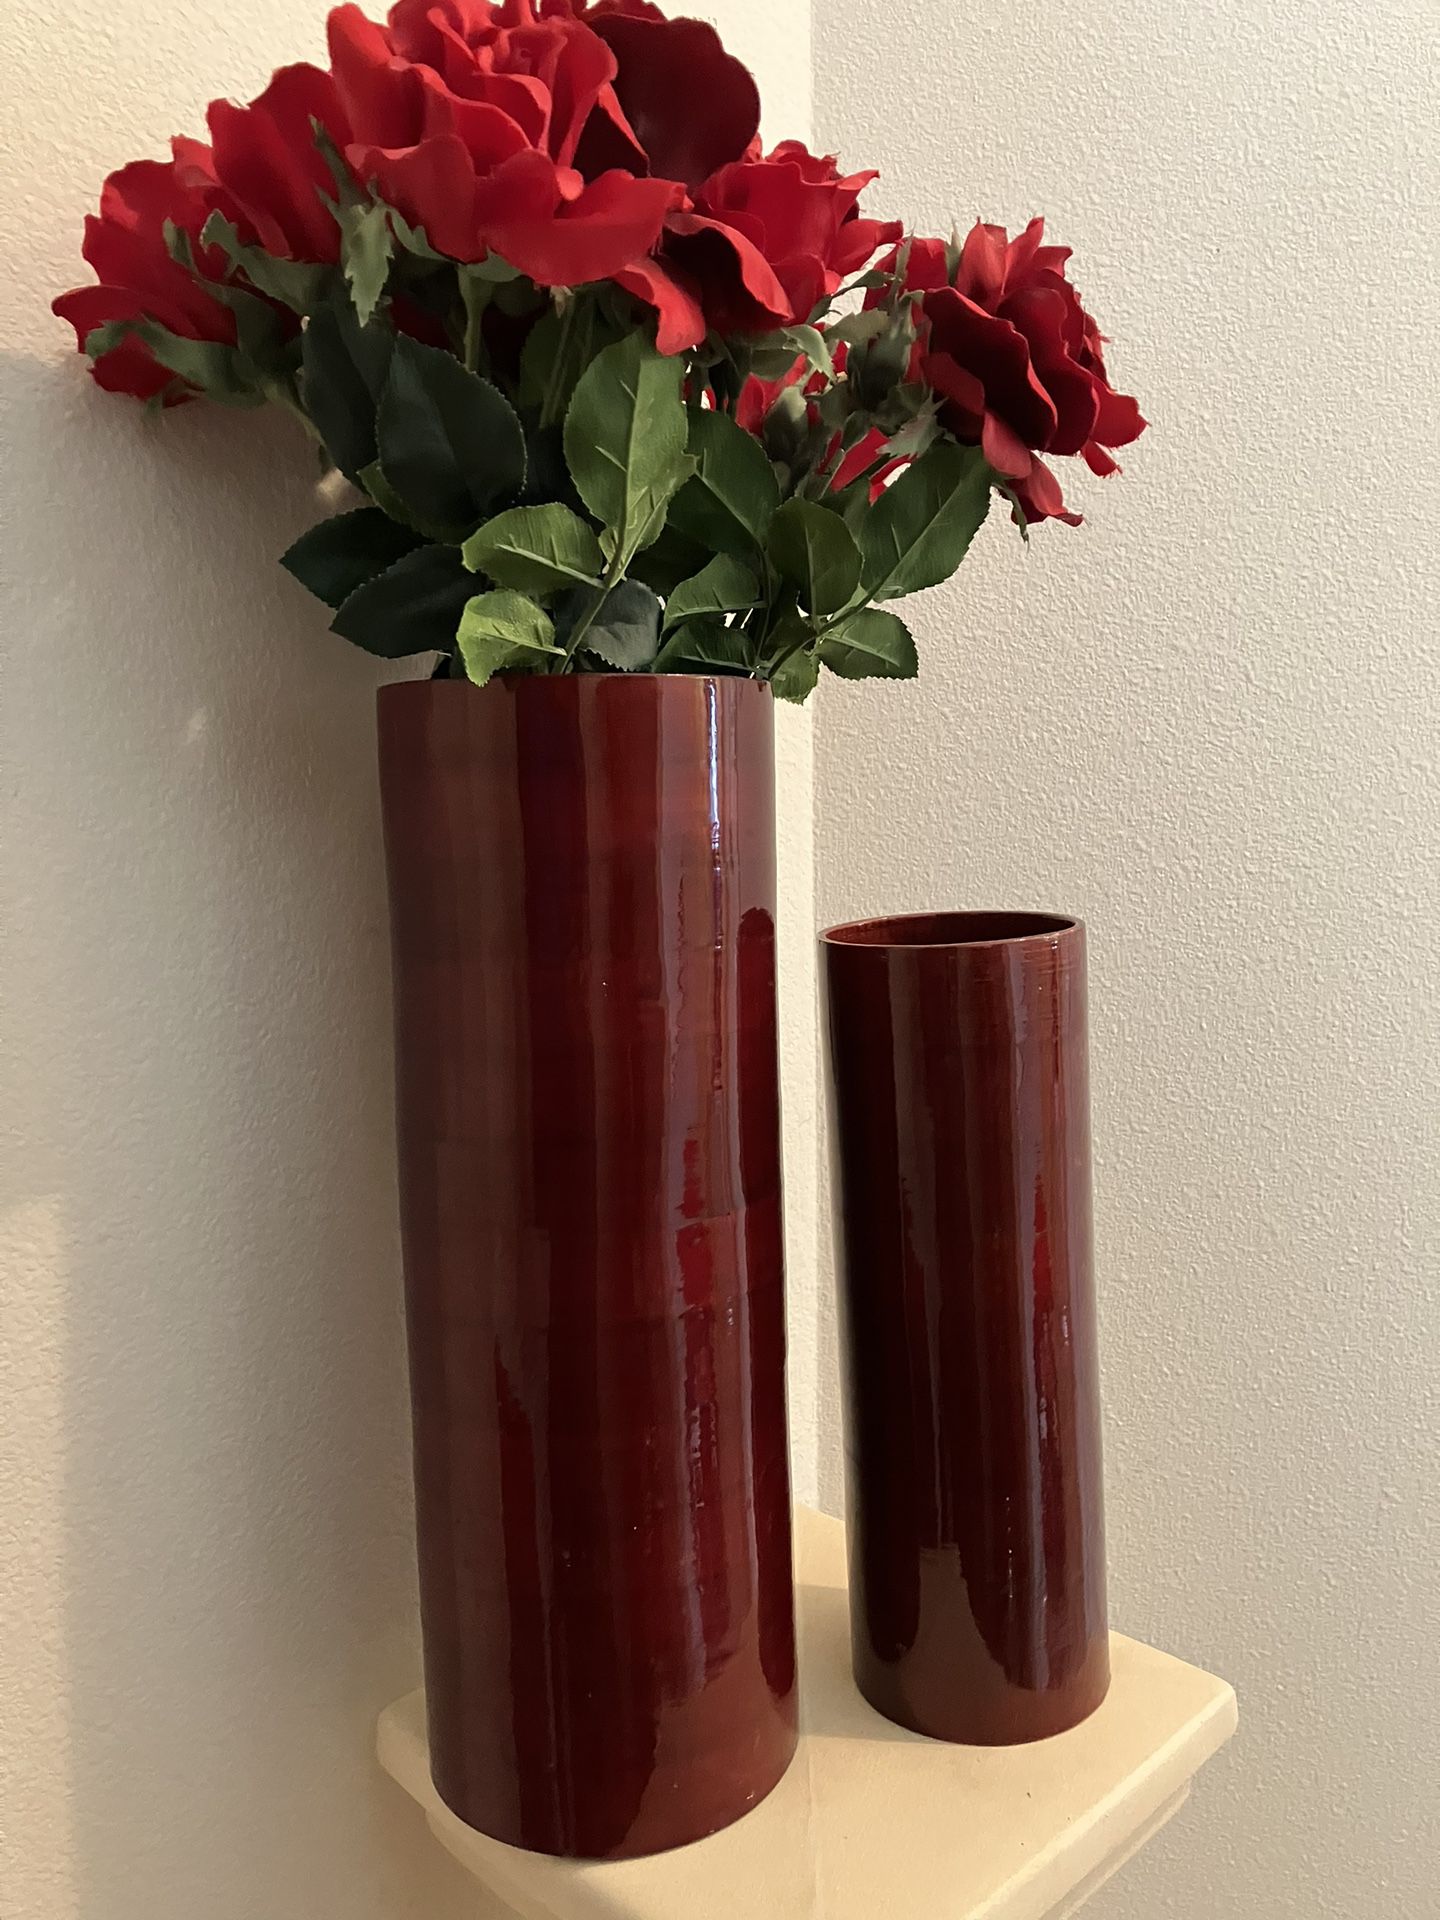 Red Flower Vases  $8.00